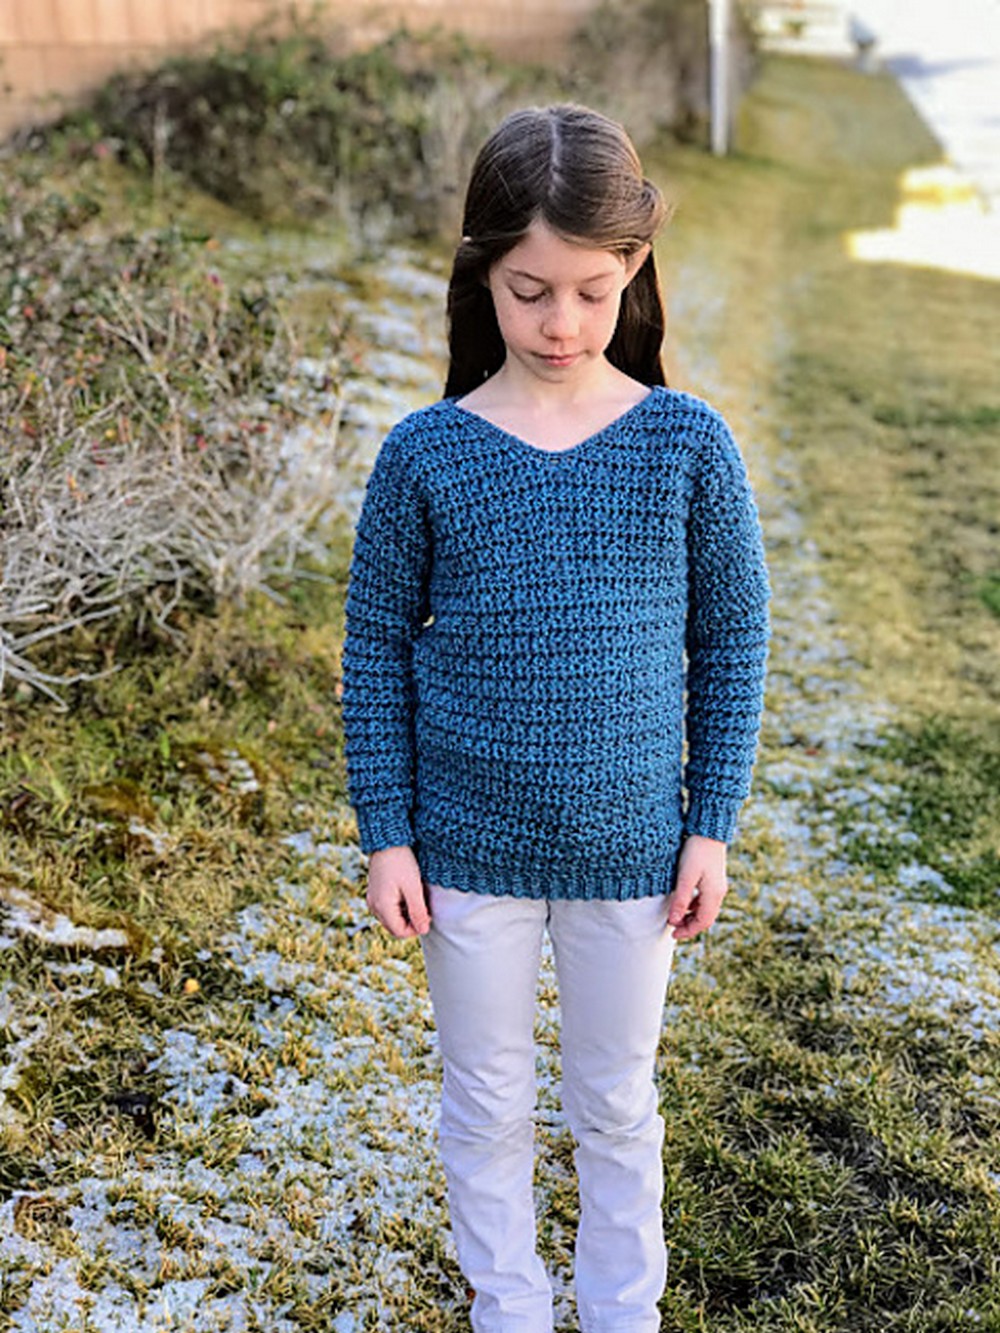 Crochet pattern for a Heidi sweater